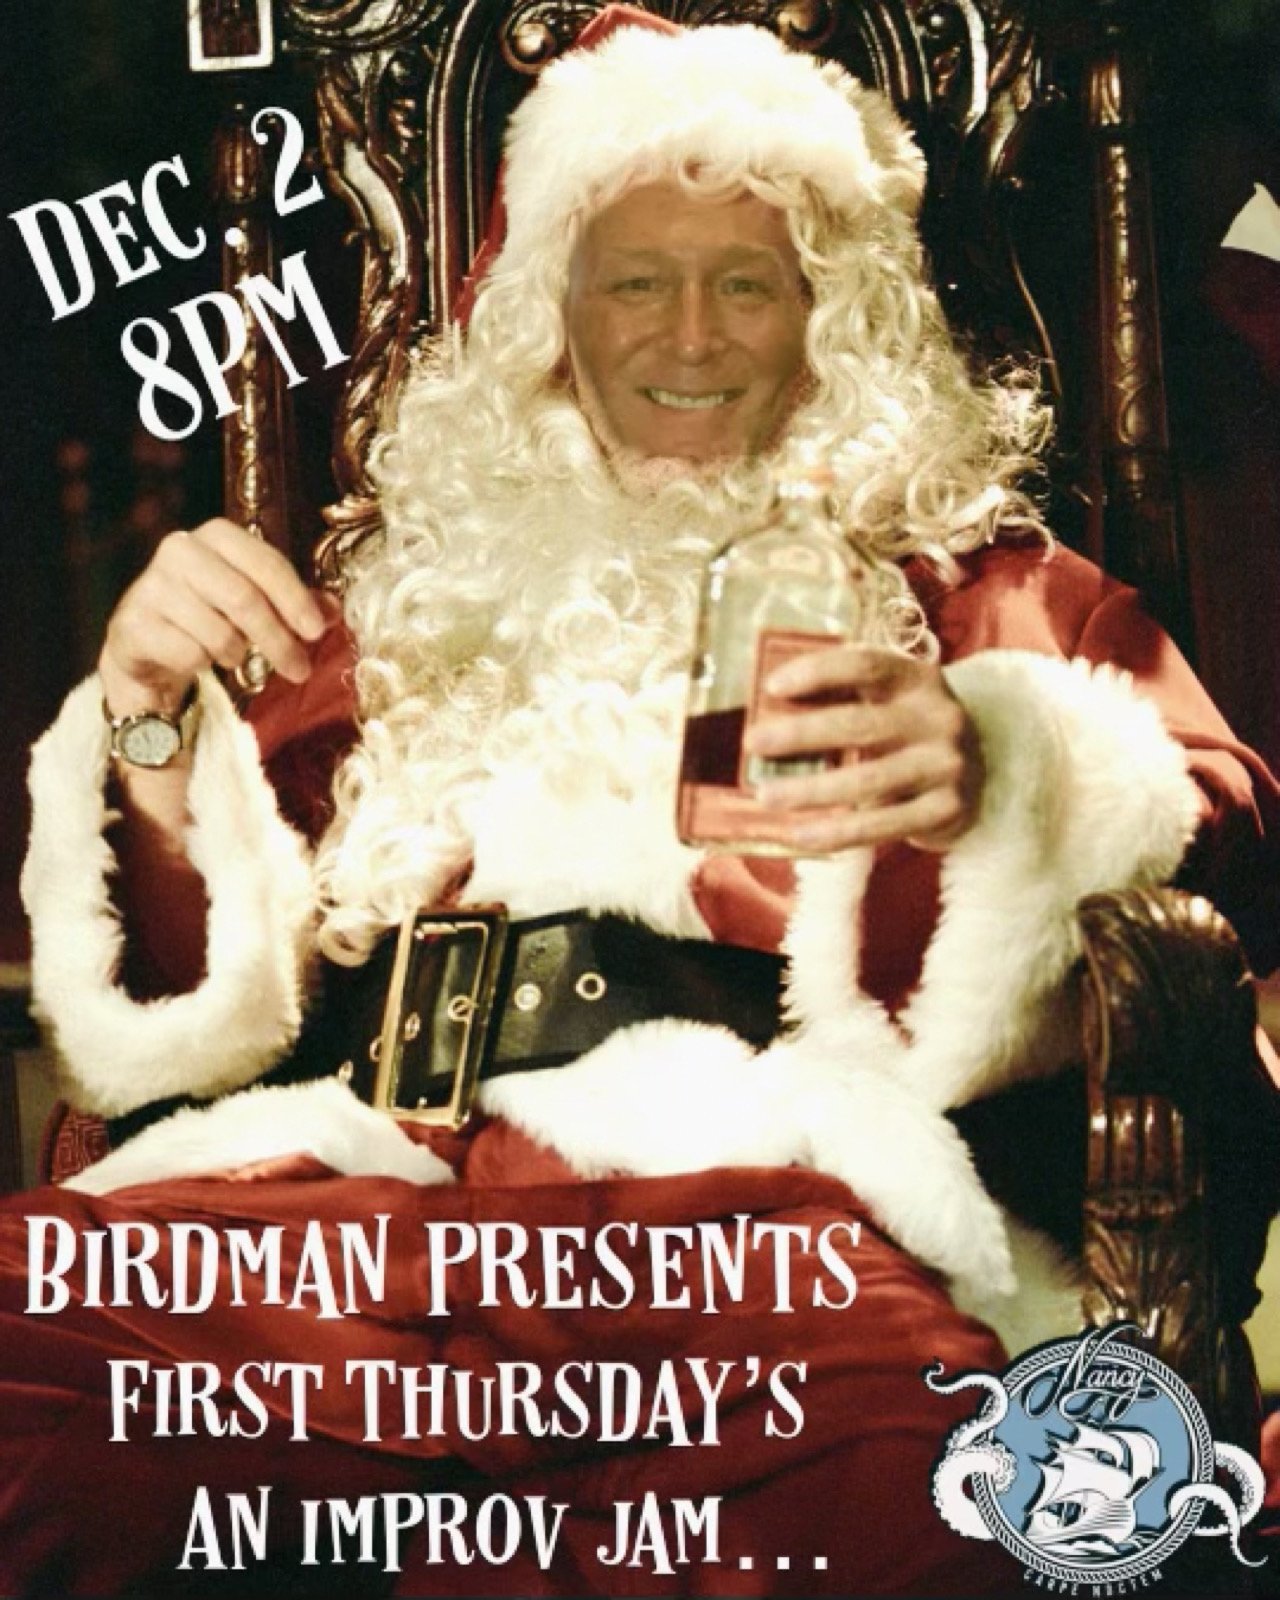 BIRDMAN PRESENTS...1st Thursdays! at Bar Nancy - Dec 2 at 8pm